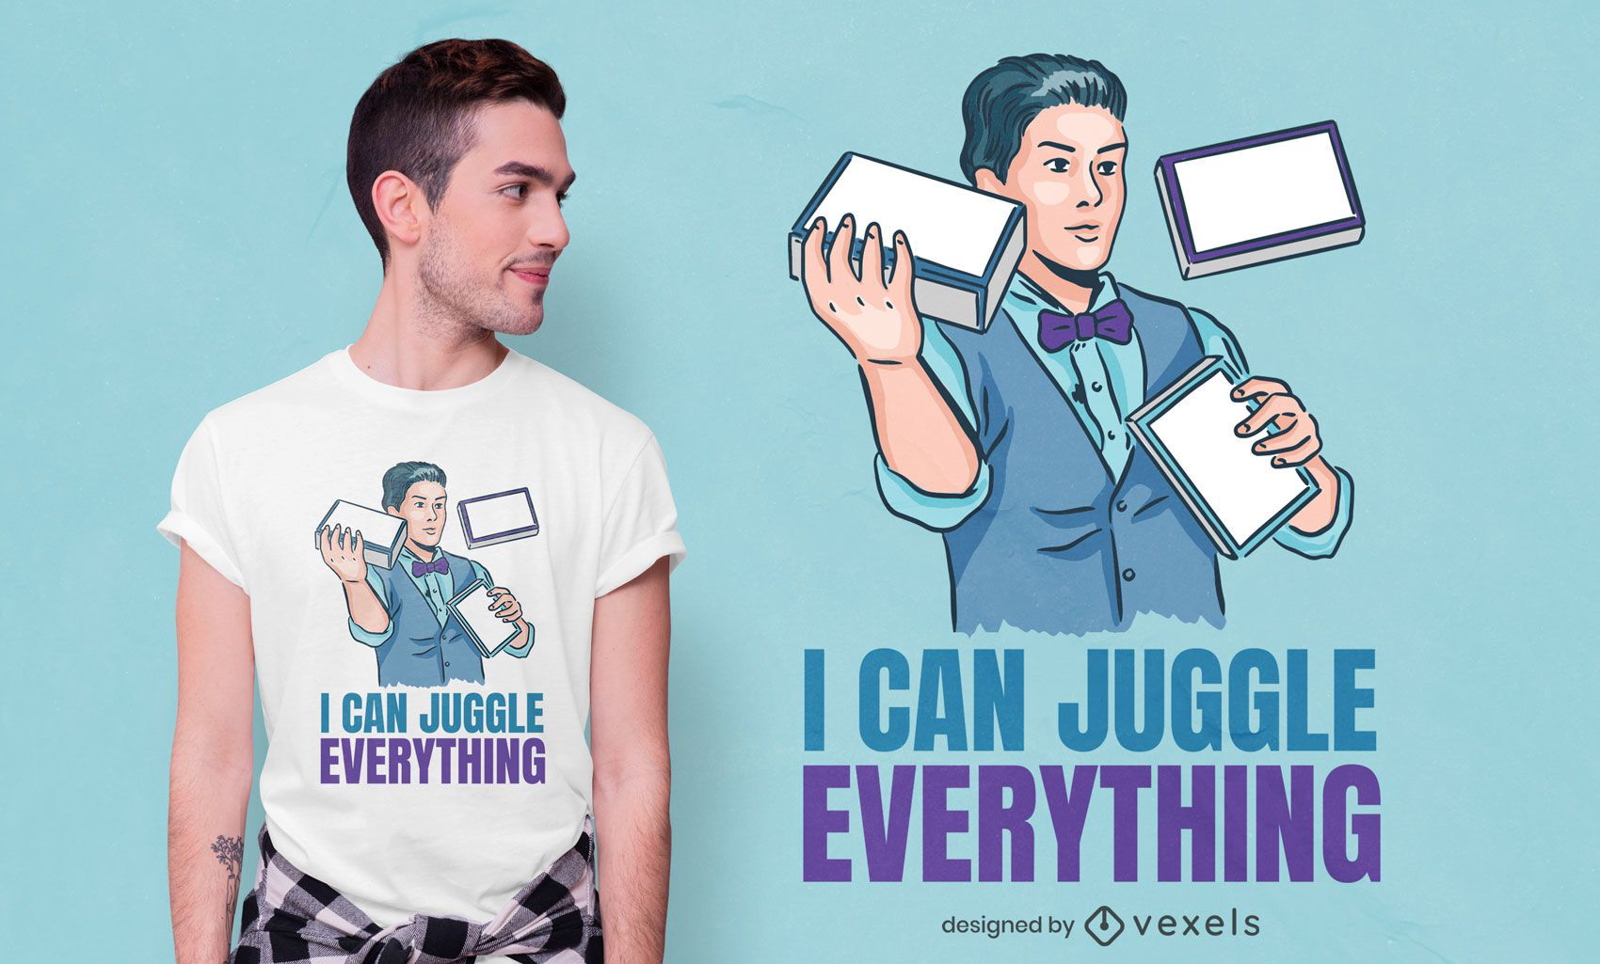 Juggler quote t-shirt design